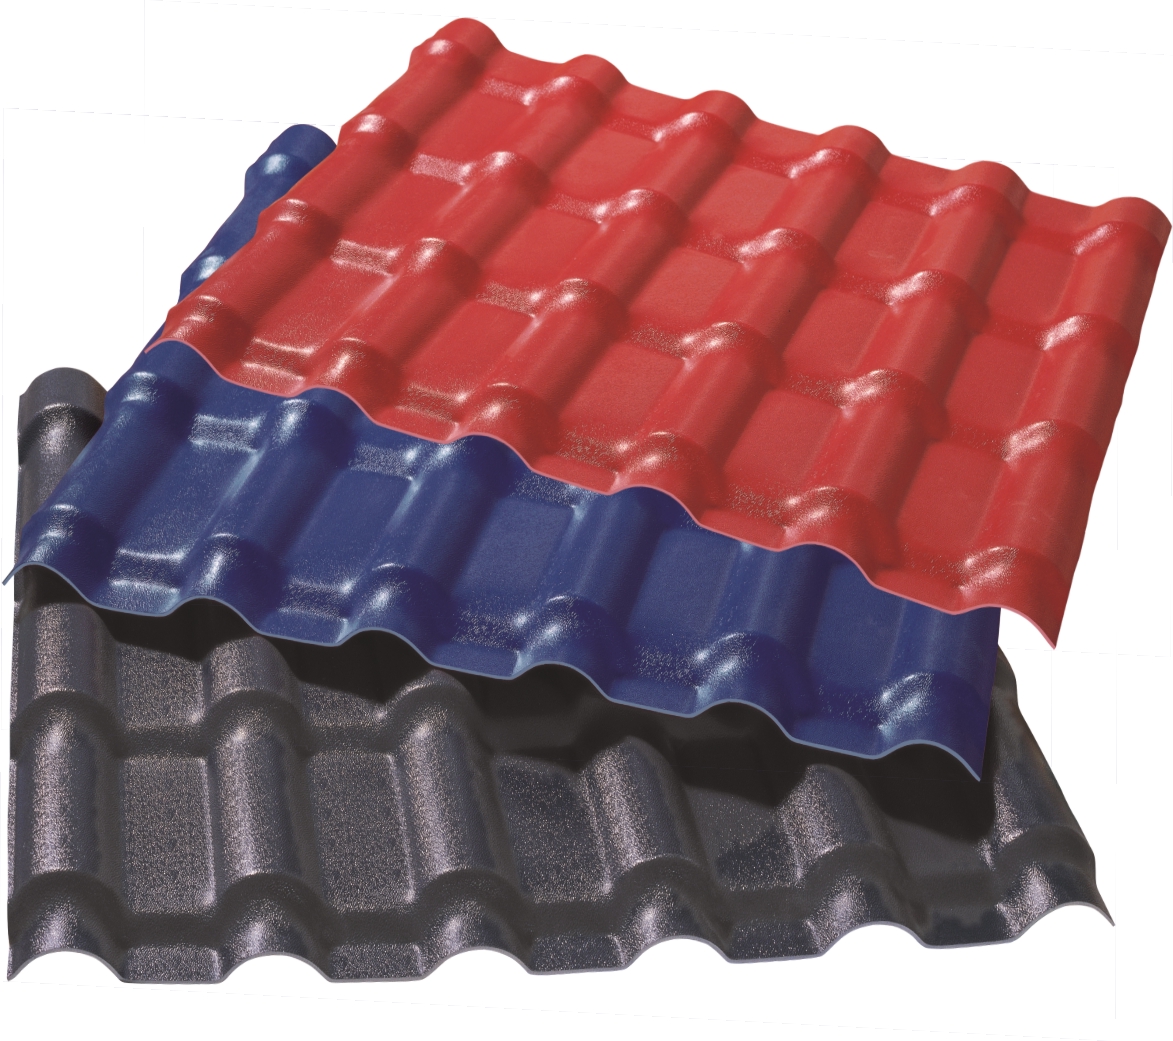 平顶山PVC屋面瓦生产设备的应用与维护保养